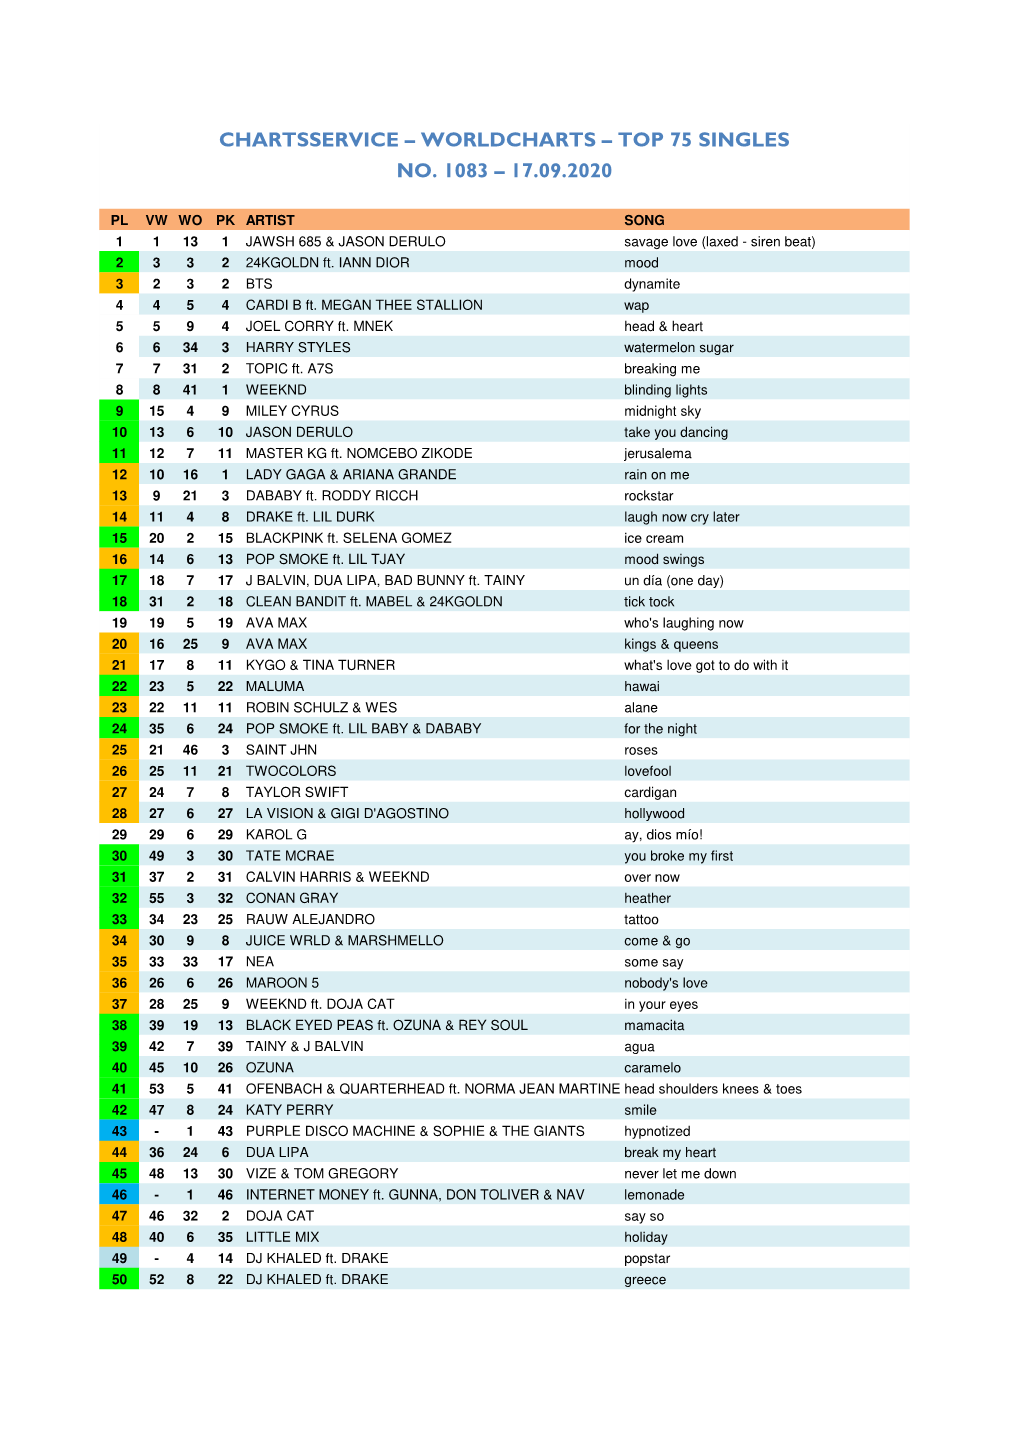 Worldcharts TOP 75 + Album TOP 30 Vom 17.09.2020